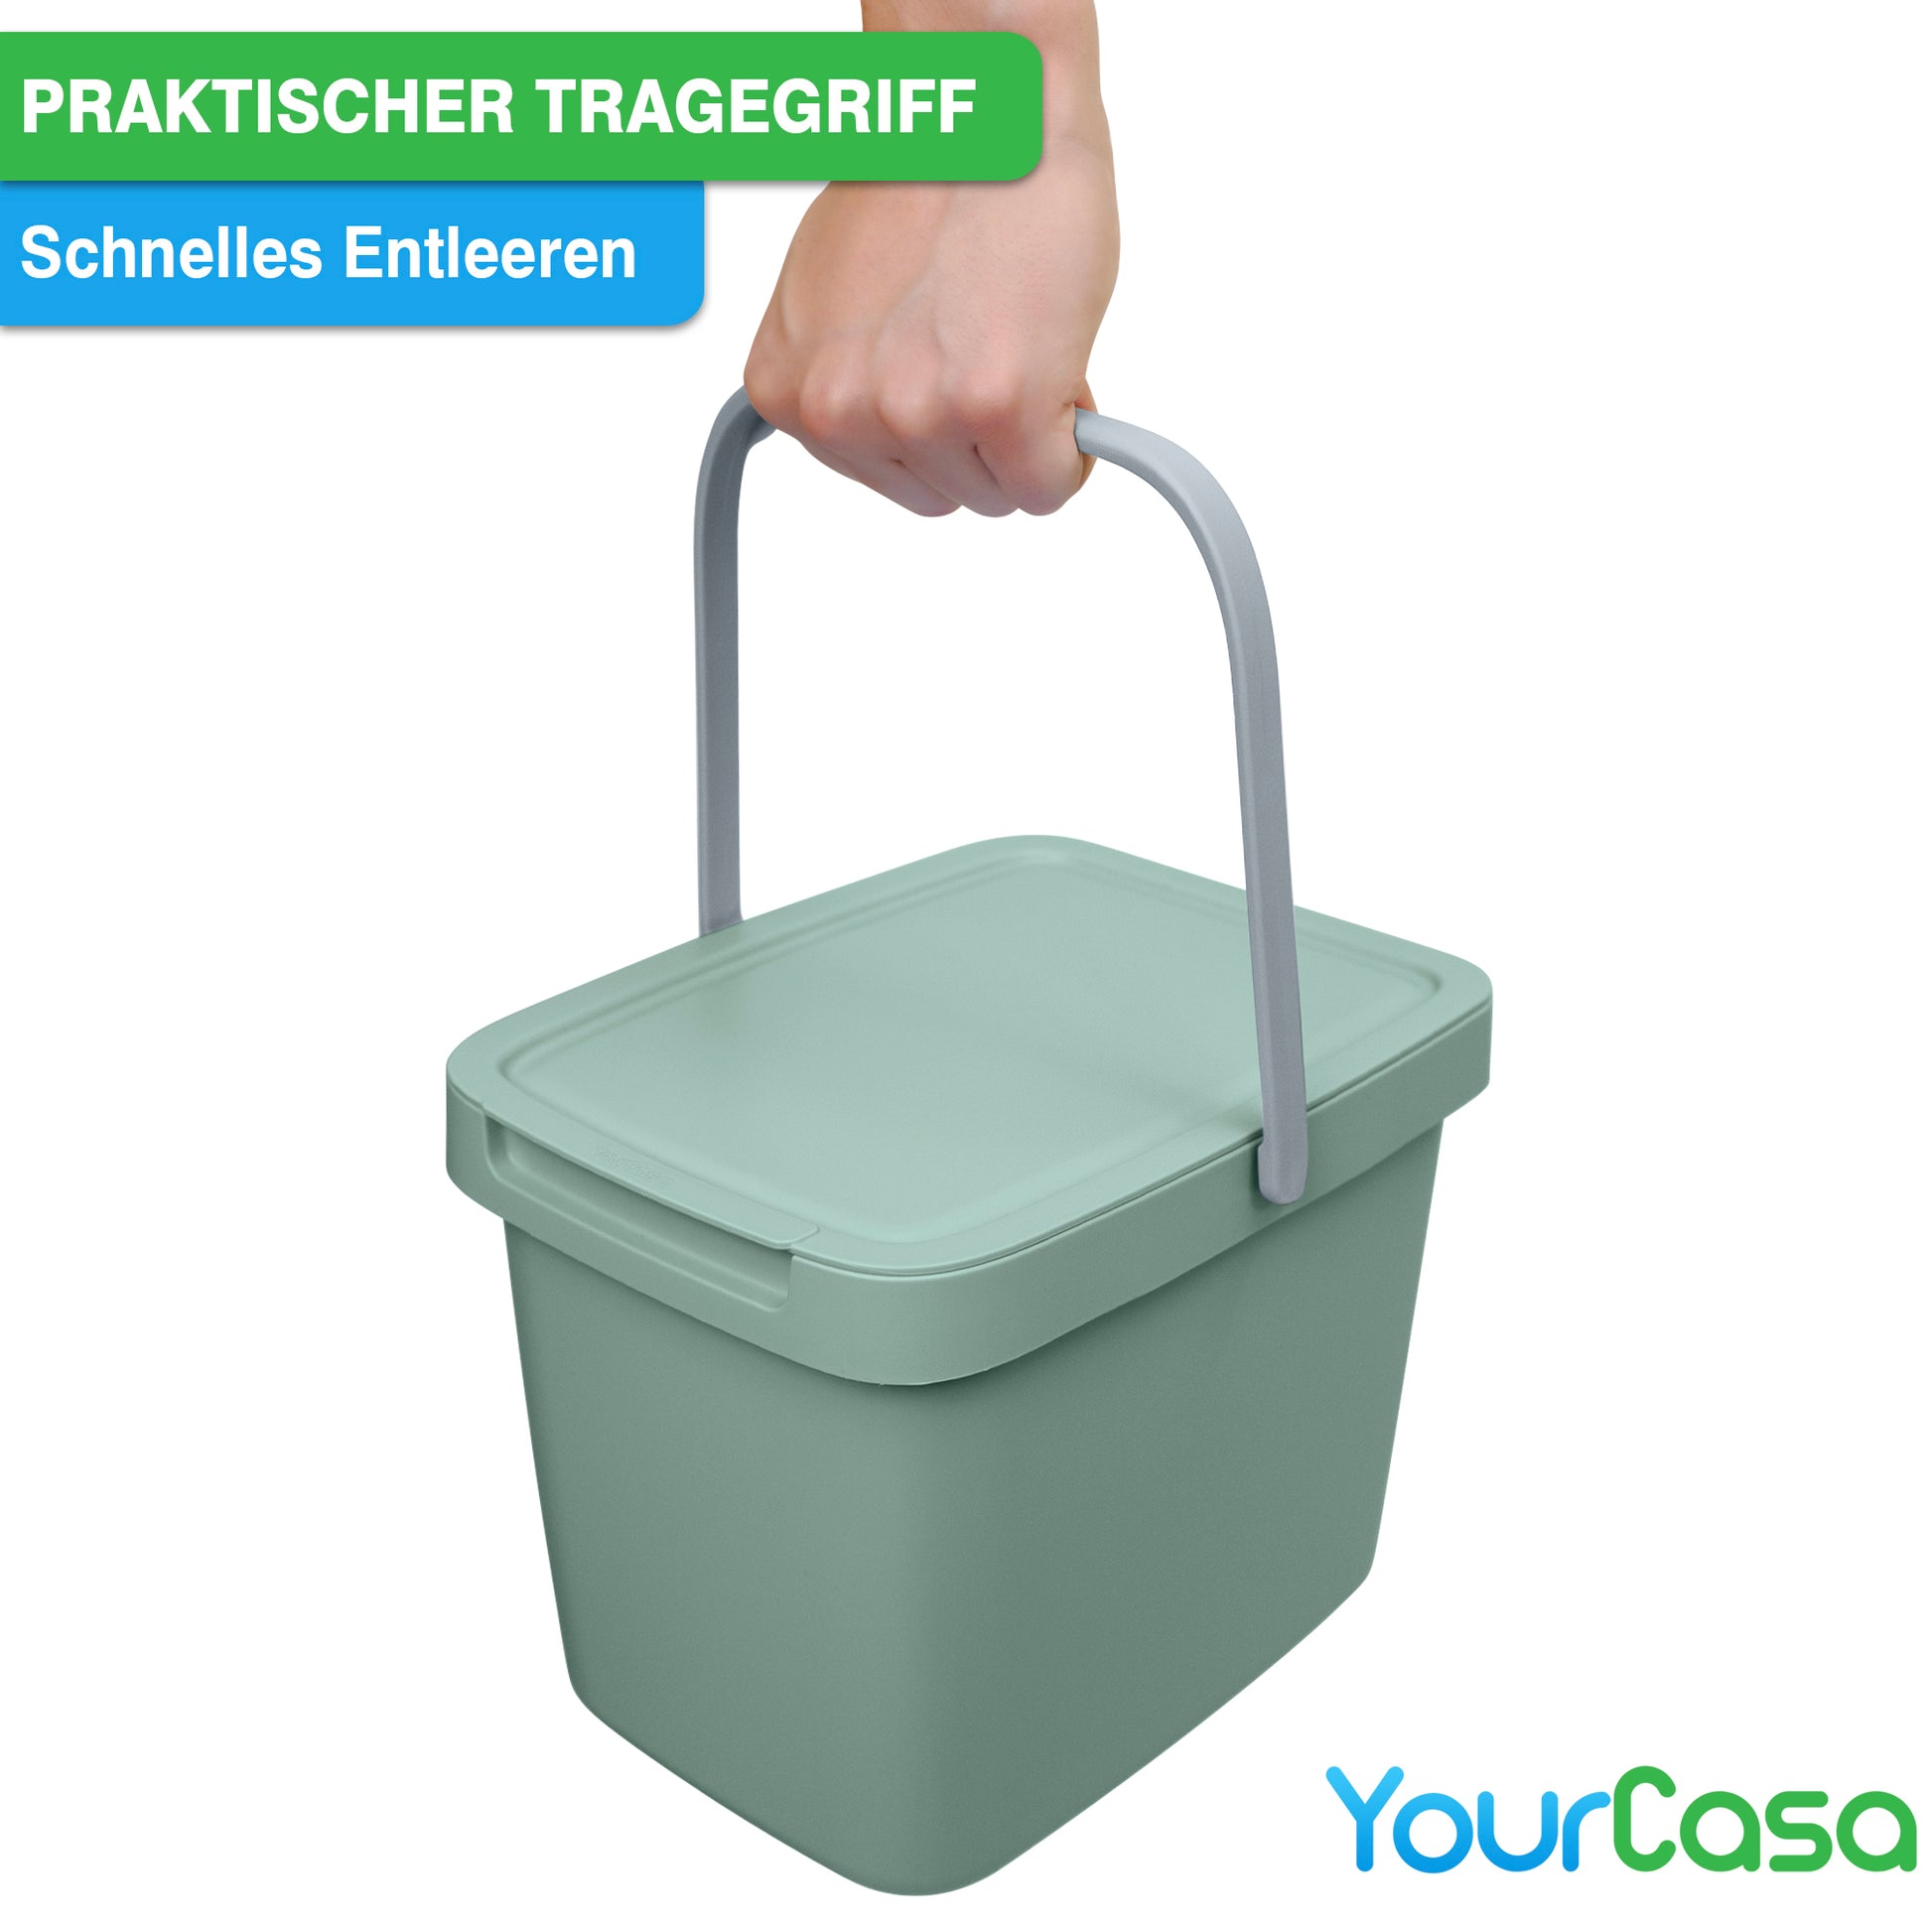 Grüner YourCasa® Biomülleimer Küche – 6L mit Deckel und praktischem Tragegriff, inklusive Müllbeutelfixierung – yourcasa-de Branding.